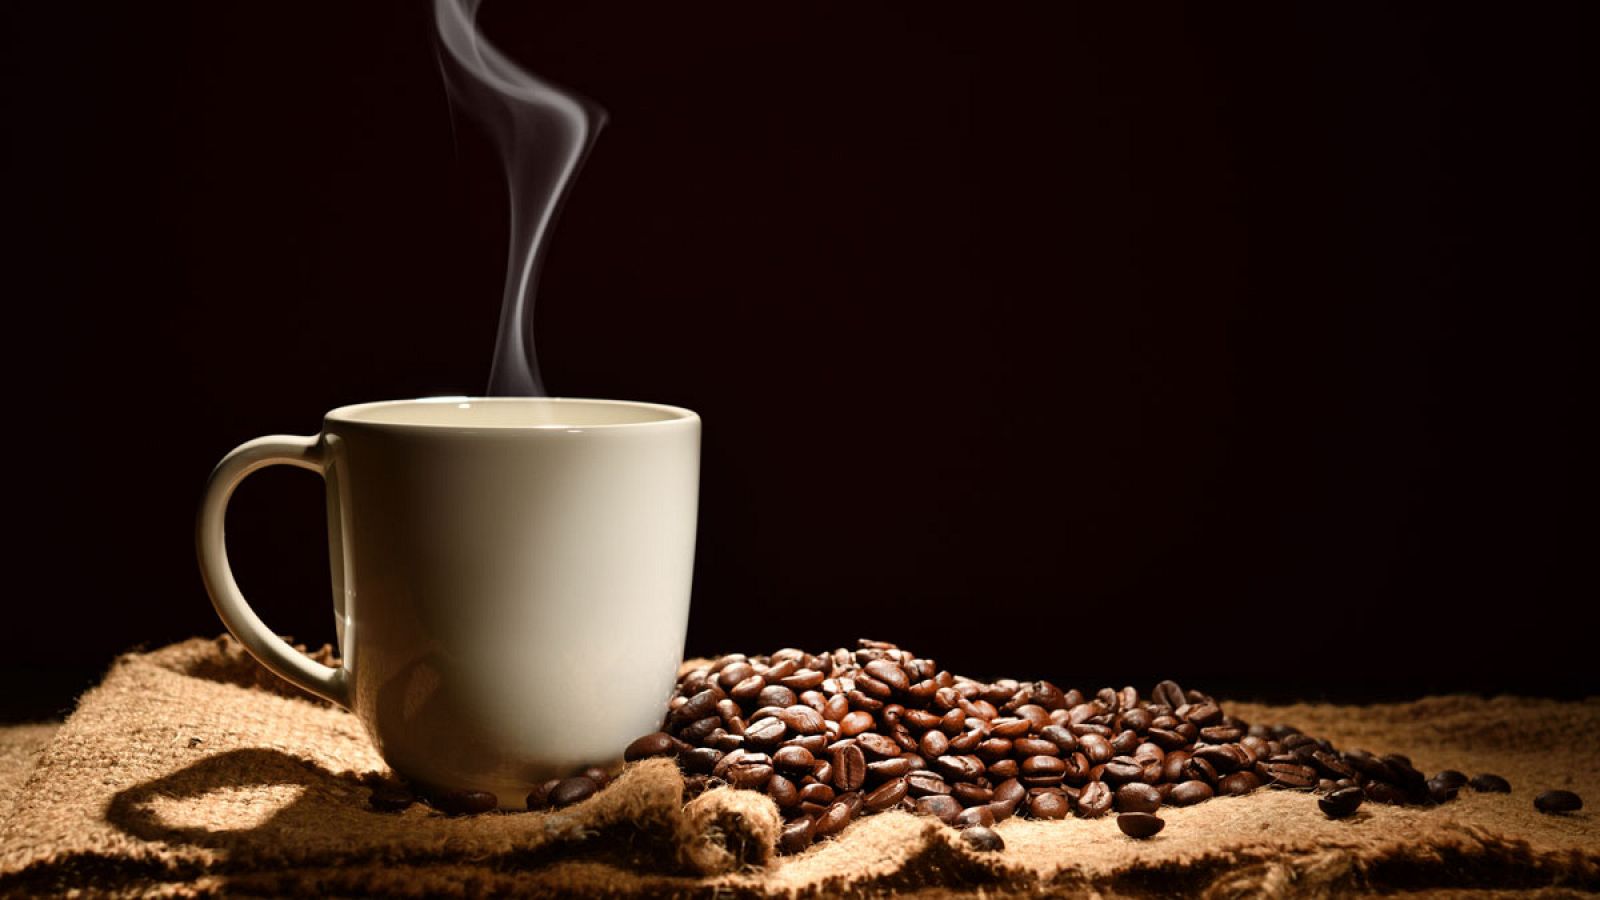 El café es una mezcla compleja de sustancias y entre ellas muchas tienen propiedades antioxidantes y antiinflamatorias.